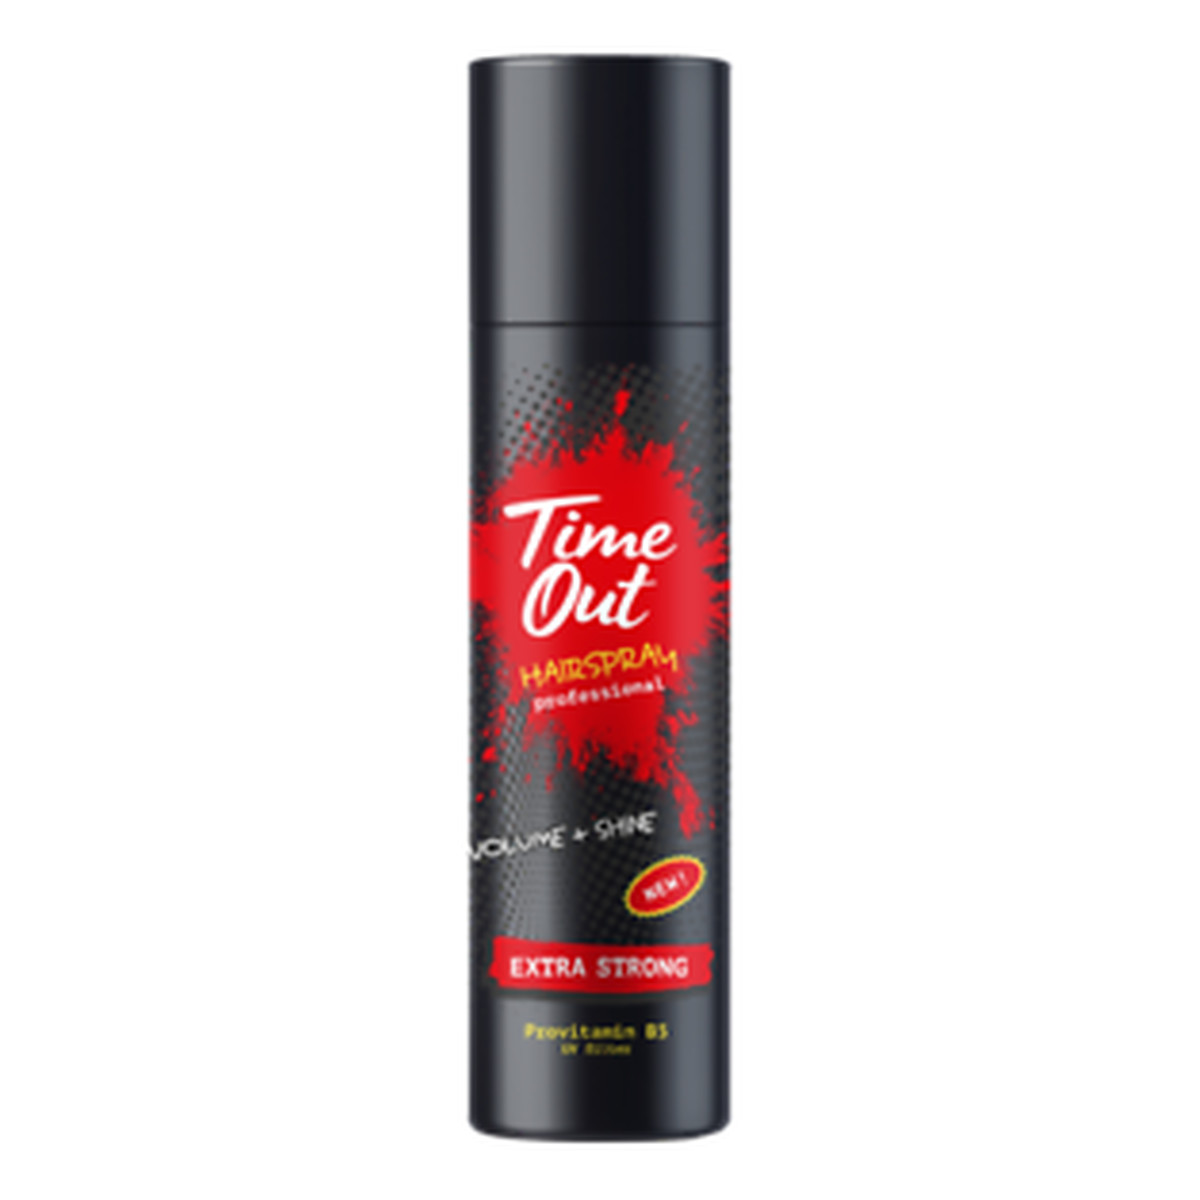 TIME OUT Hairspray Extra Strong Volume And Shine Lakier do włosów nadający objętość i blask 265ml